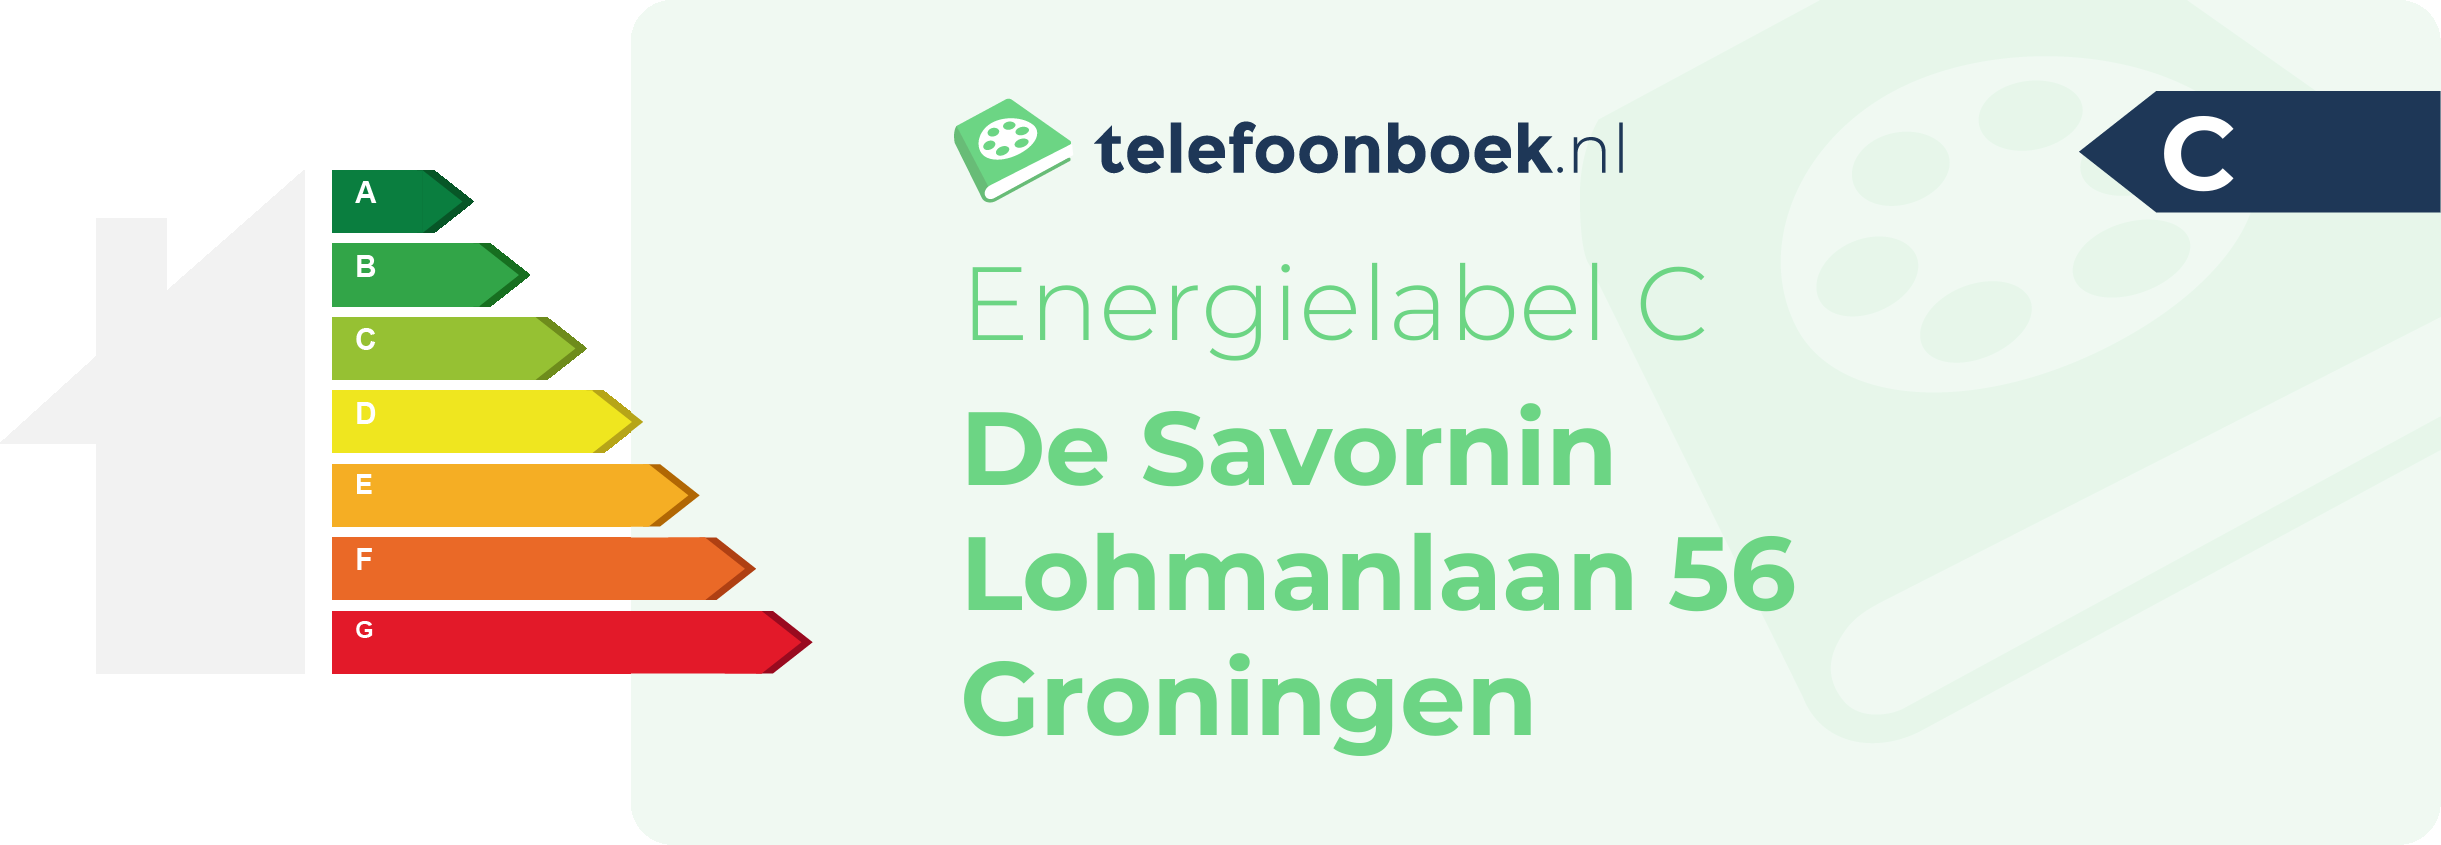 Energielabel De Savornin Lohmanlaan 56 Groningen